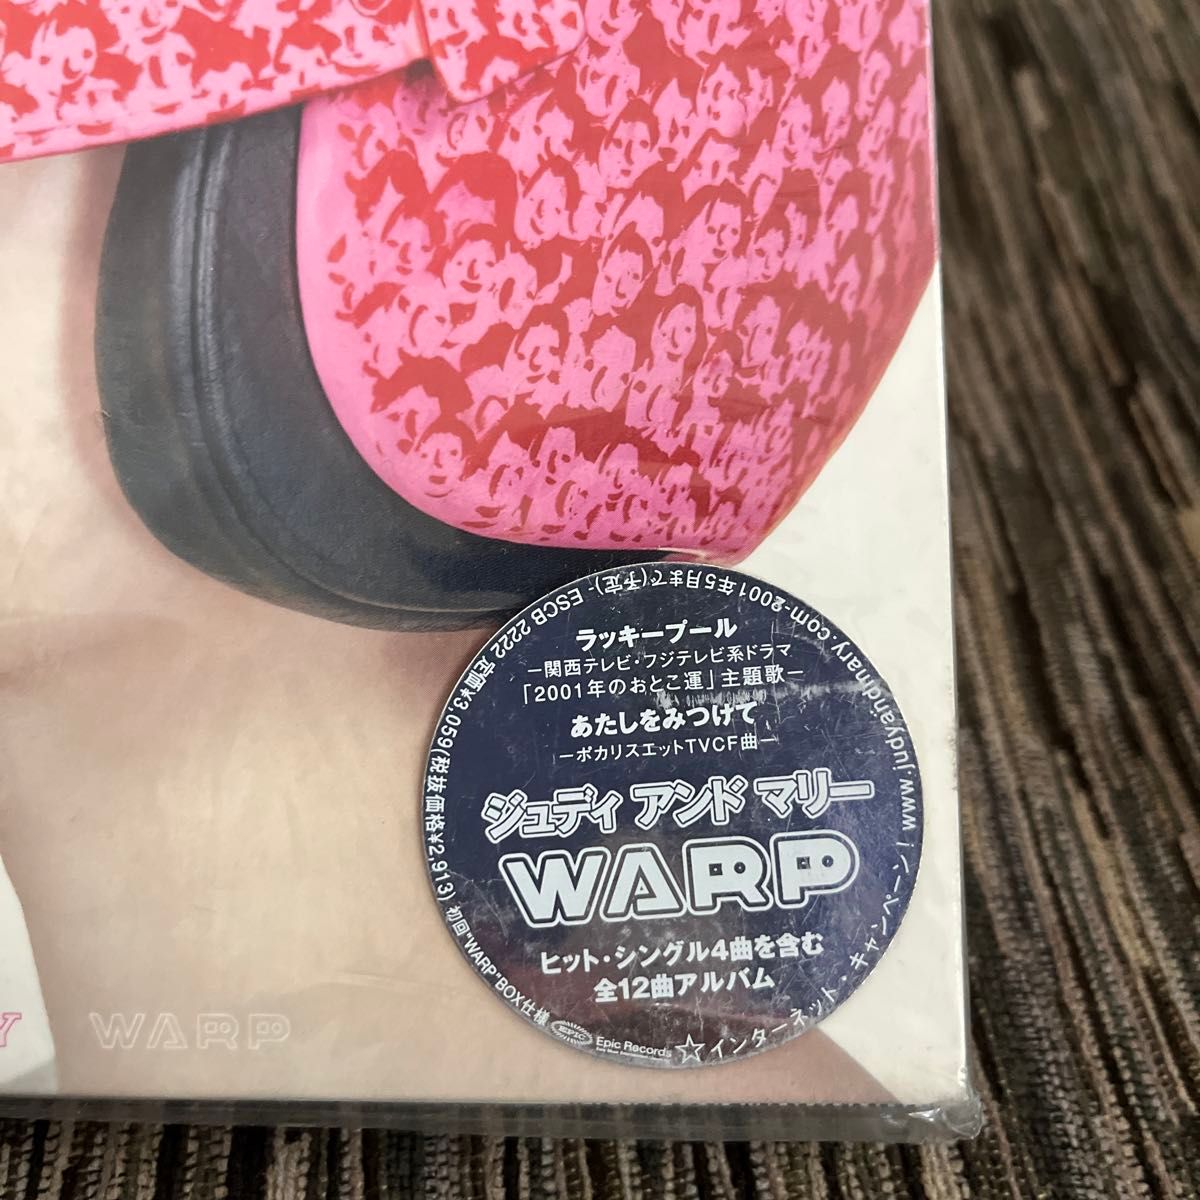 【紙パッケージ】JUDY AND MARY WARP ワープ CD アルバム